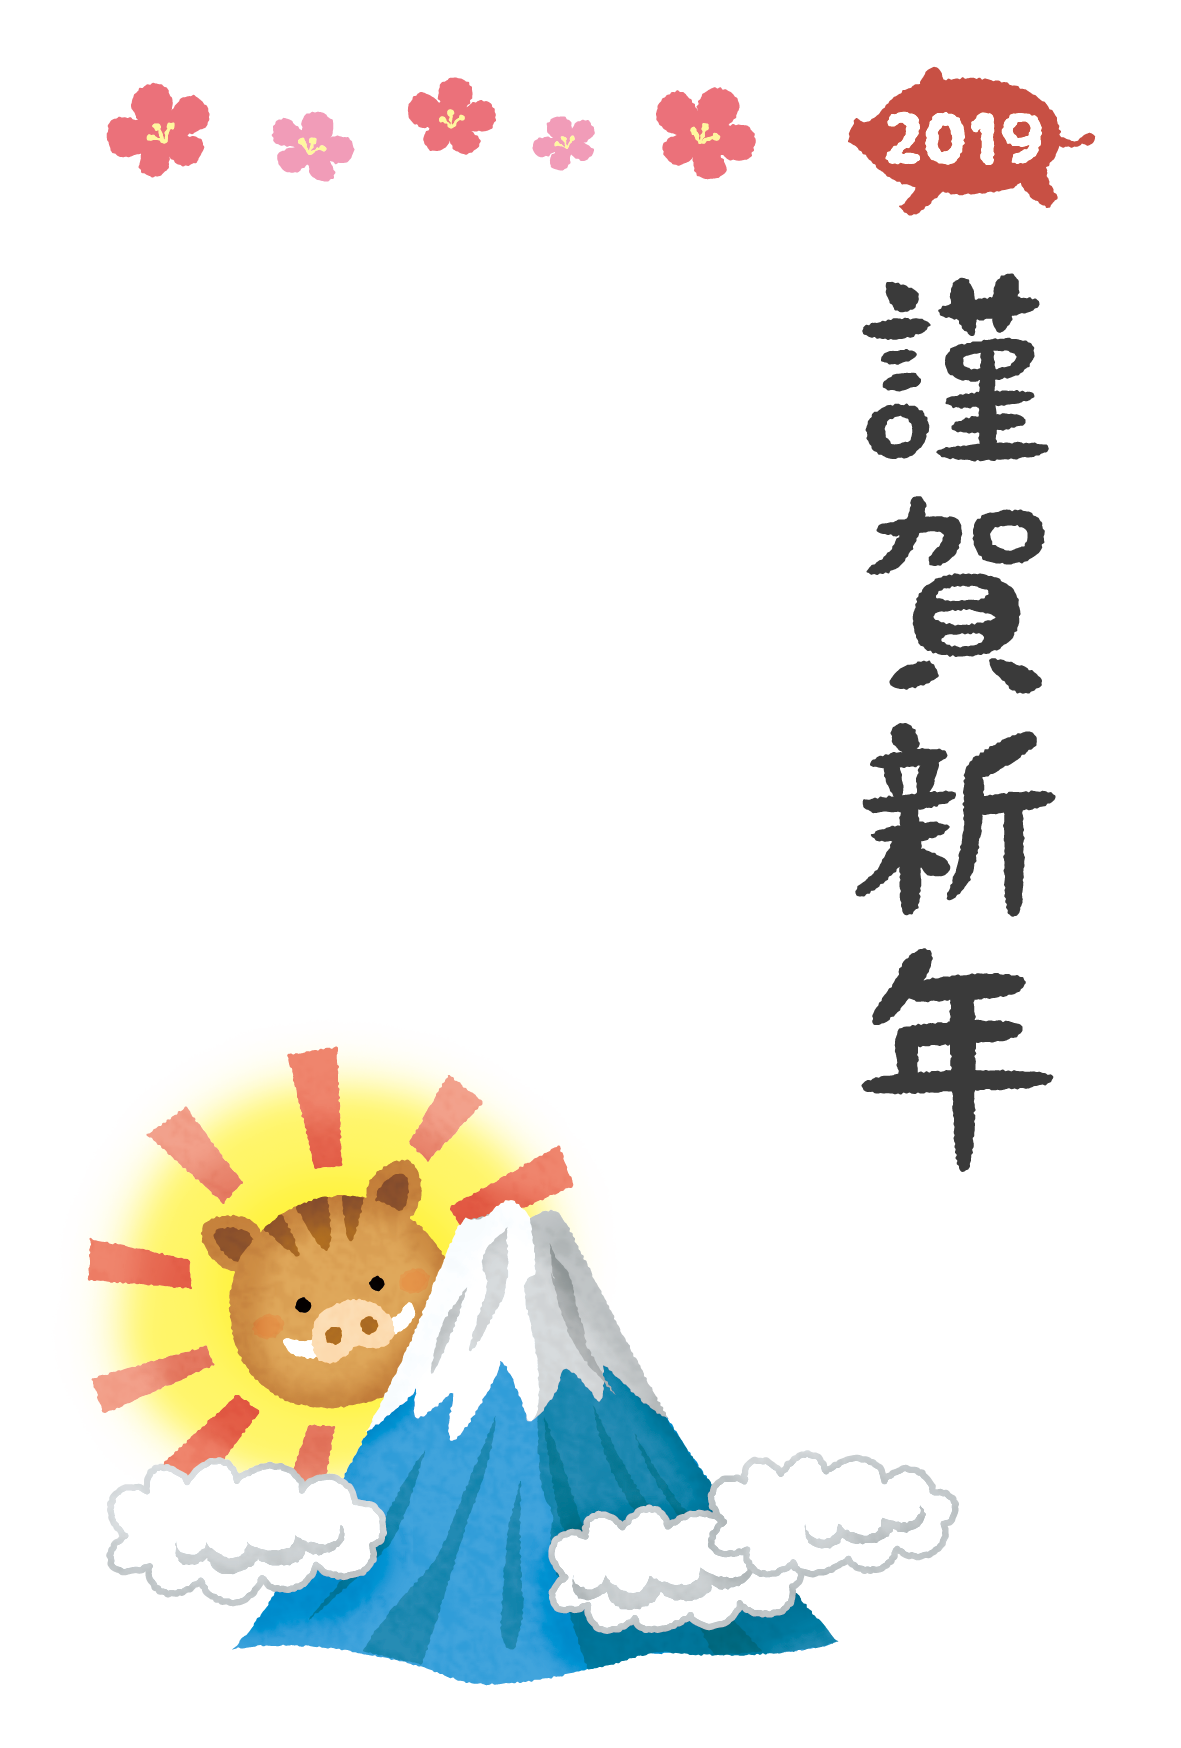 Plantilla de Tarjeta de Kingashinnen gratis (Jabalí y Monte Fuji) 02